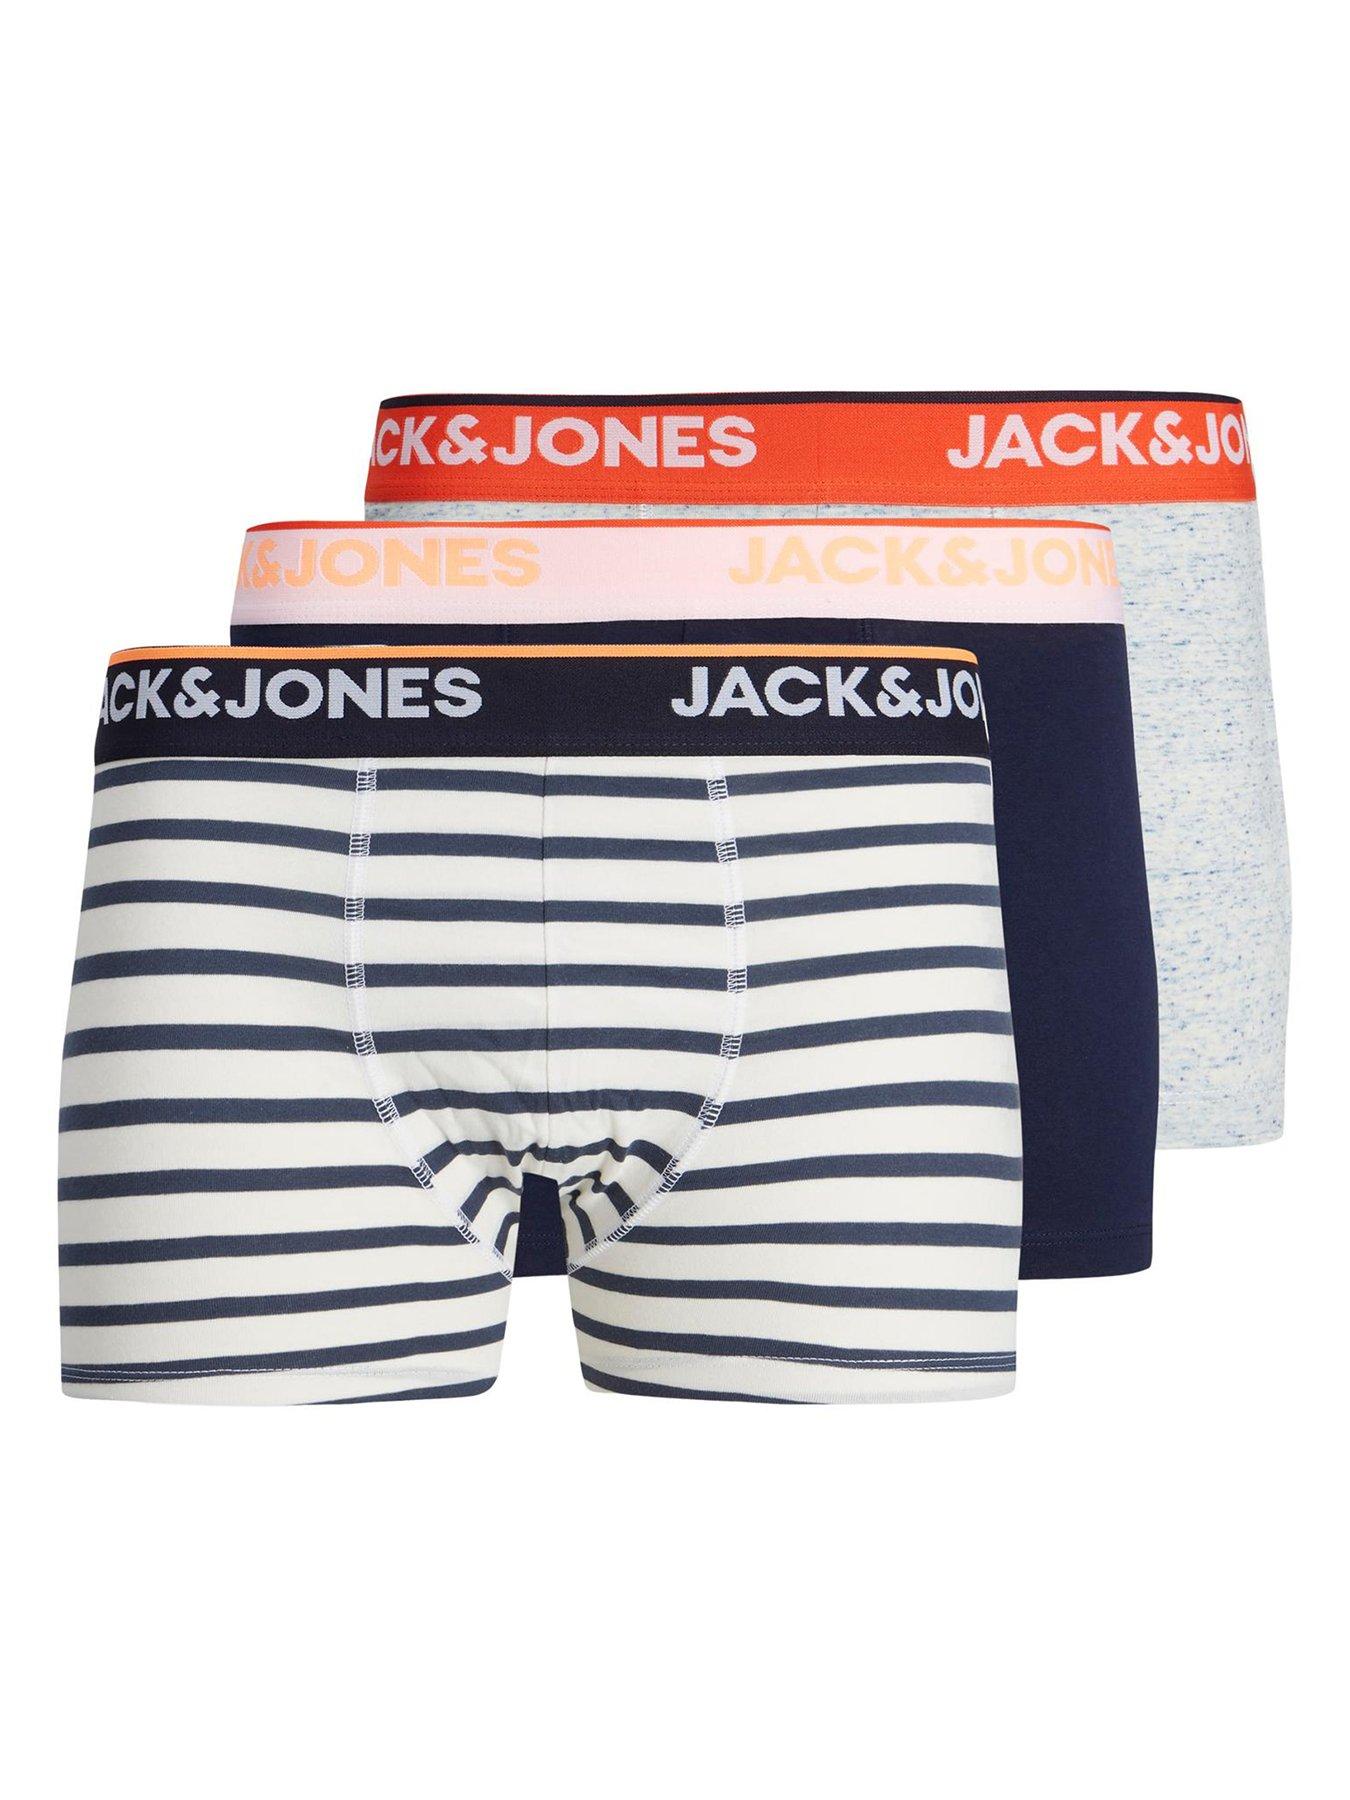 White Single discount 55% MEN FASHION Underwear & Nightwear Jack & Jones Socks 